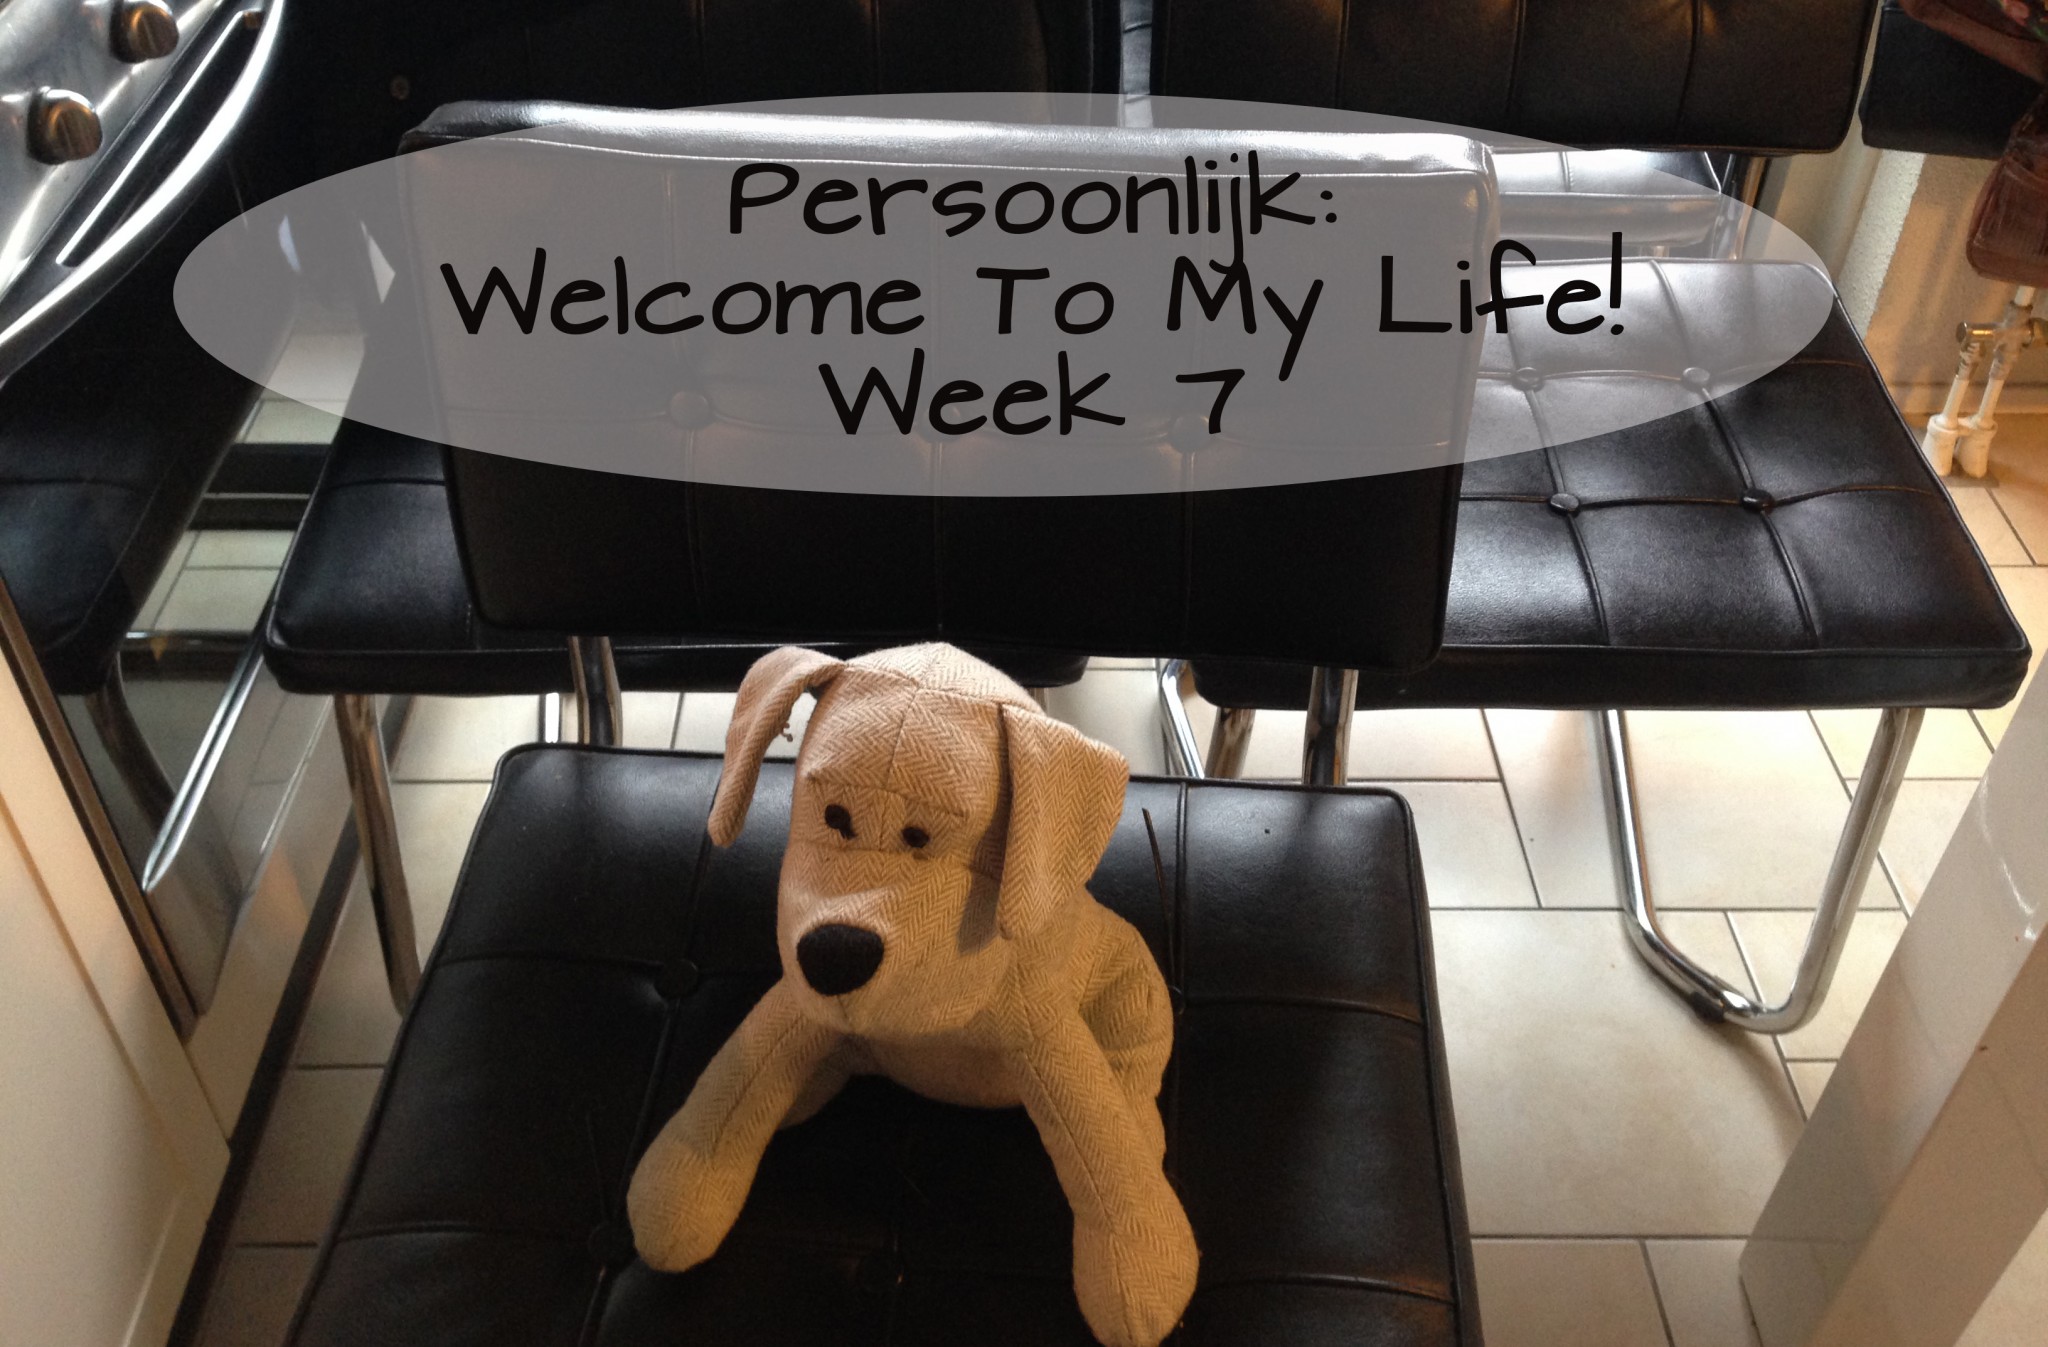 Persoonlijk: Welcome To My Life! (week 7)